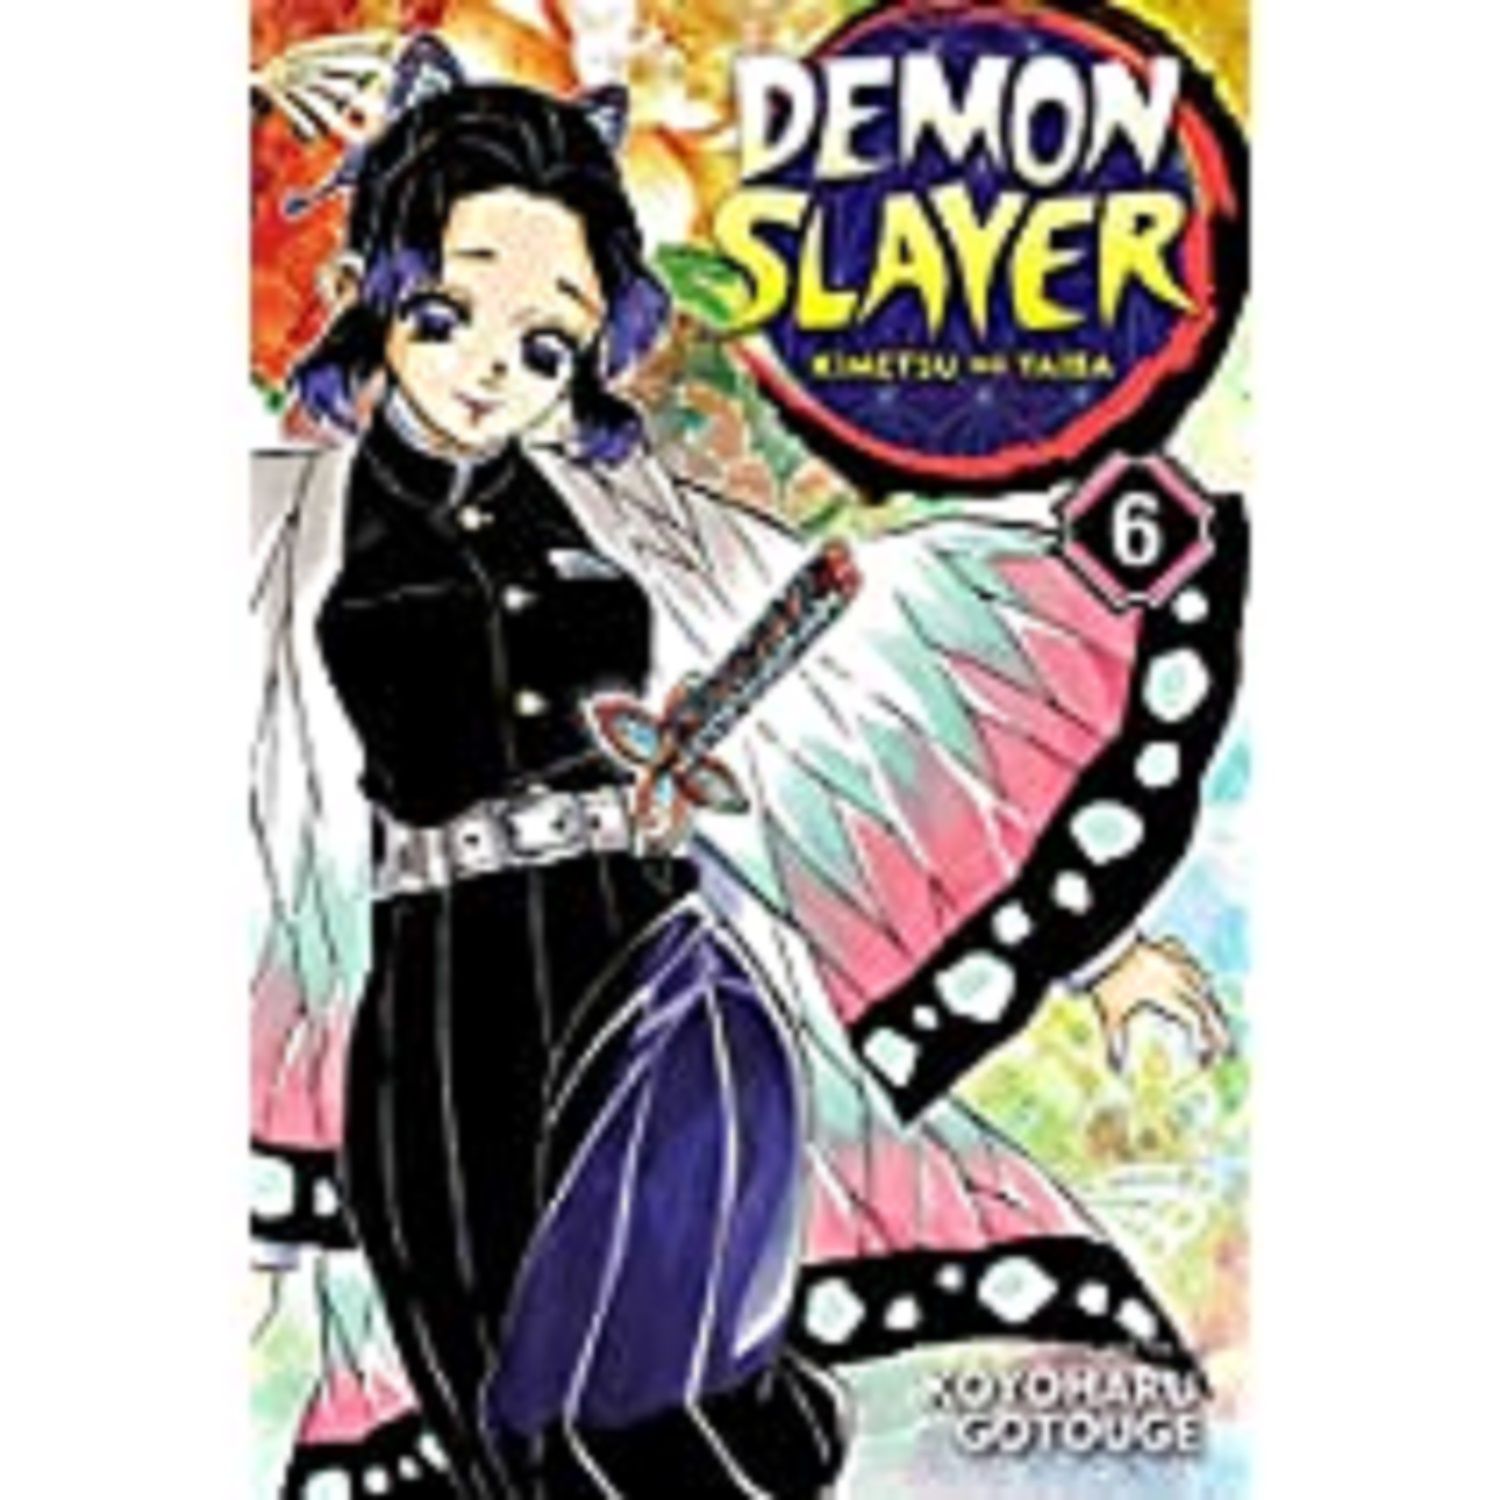     			Demon Slayer: Kimetsu no Yaiba, Vol. 6 (6) Paperback – May 7, 2019